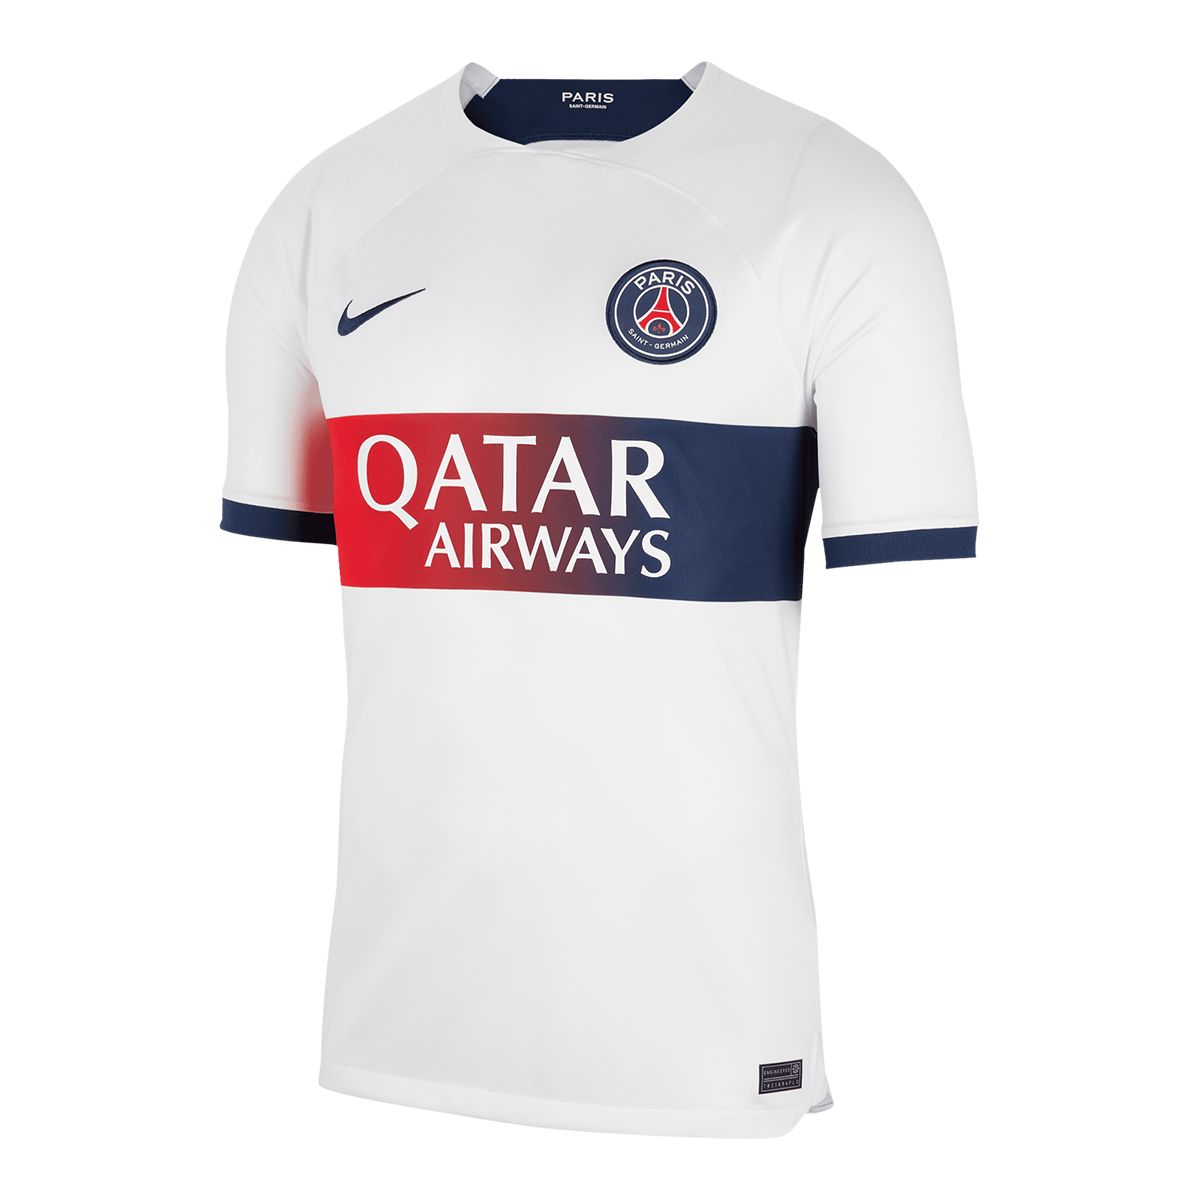 Image of Paris Saint-Germain F.c. Nike Replica Away Jersey